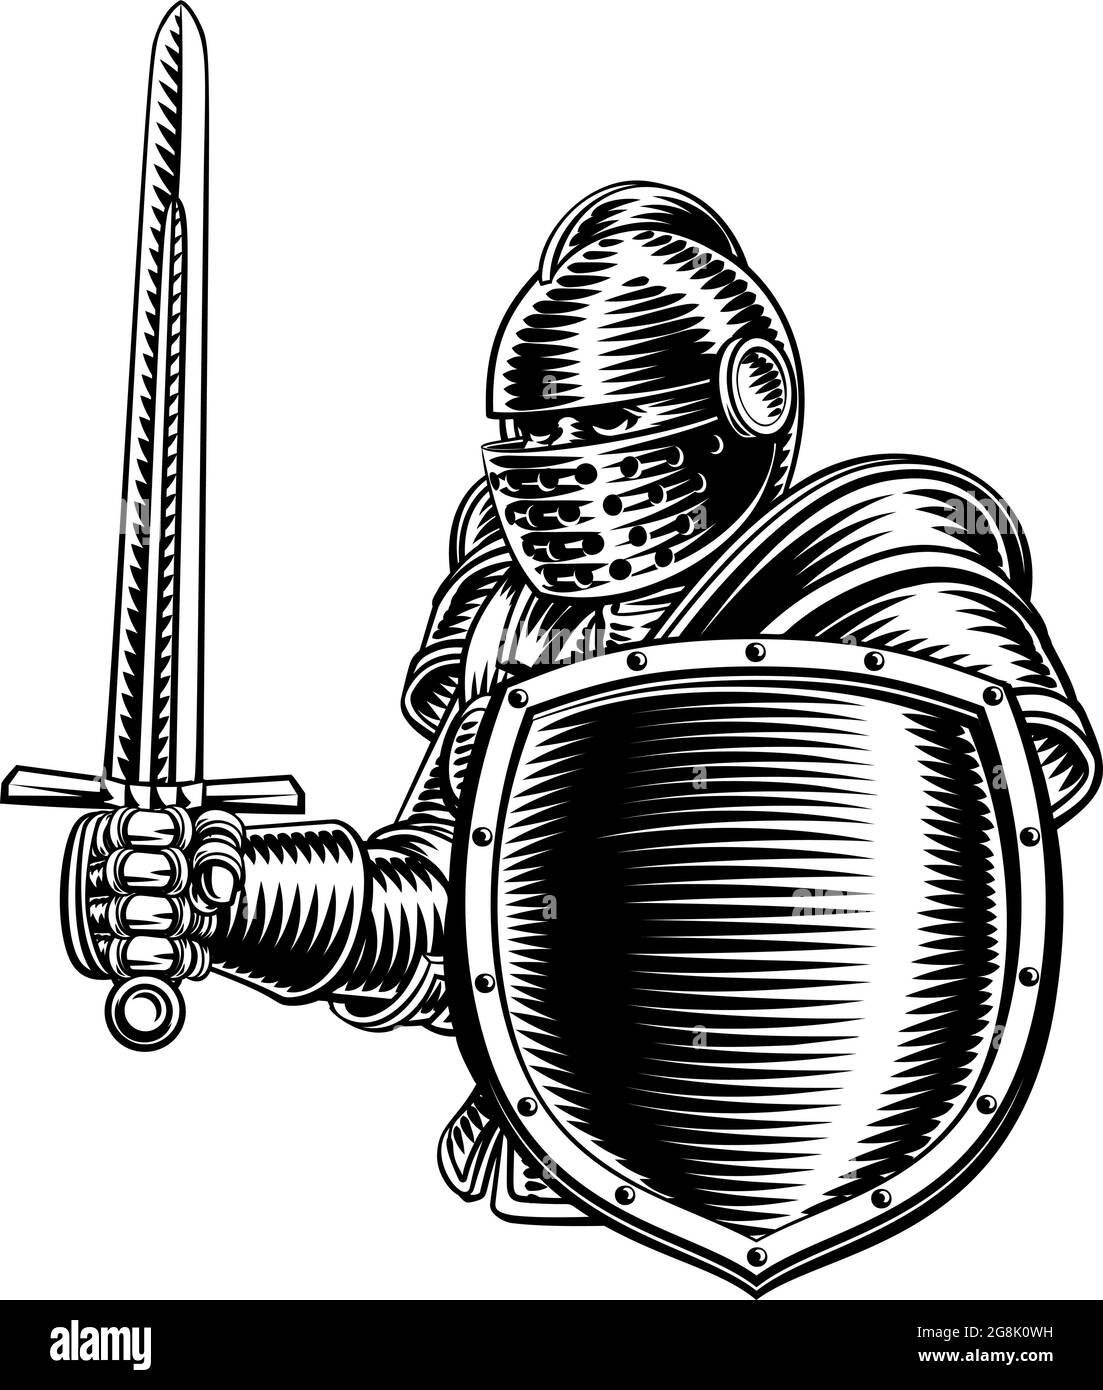 Épée de chevalier médiéval et bois d'époque de bouclier Illustration de Vecteur